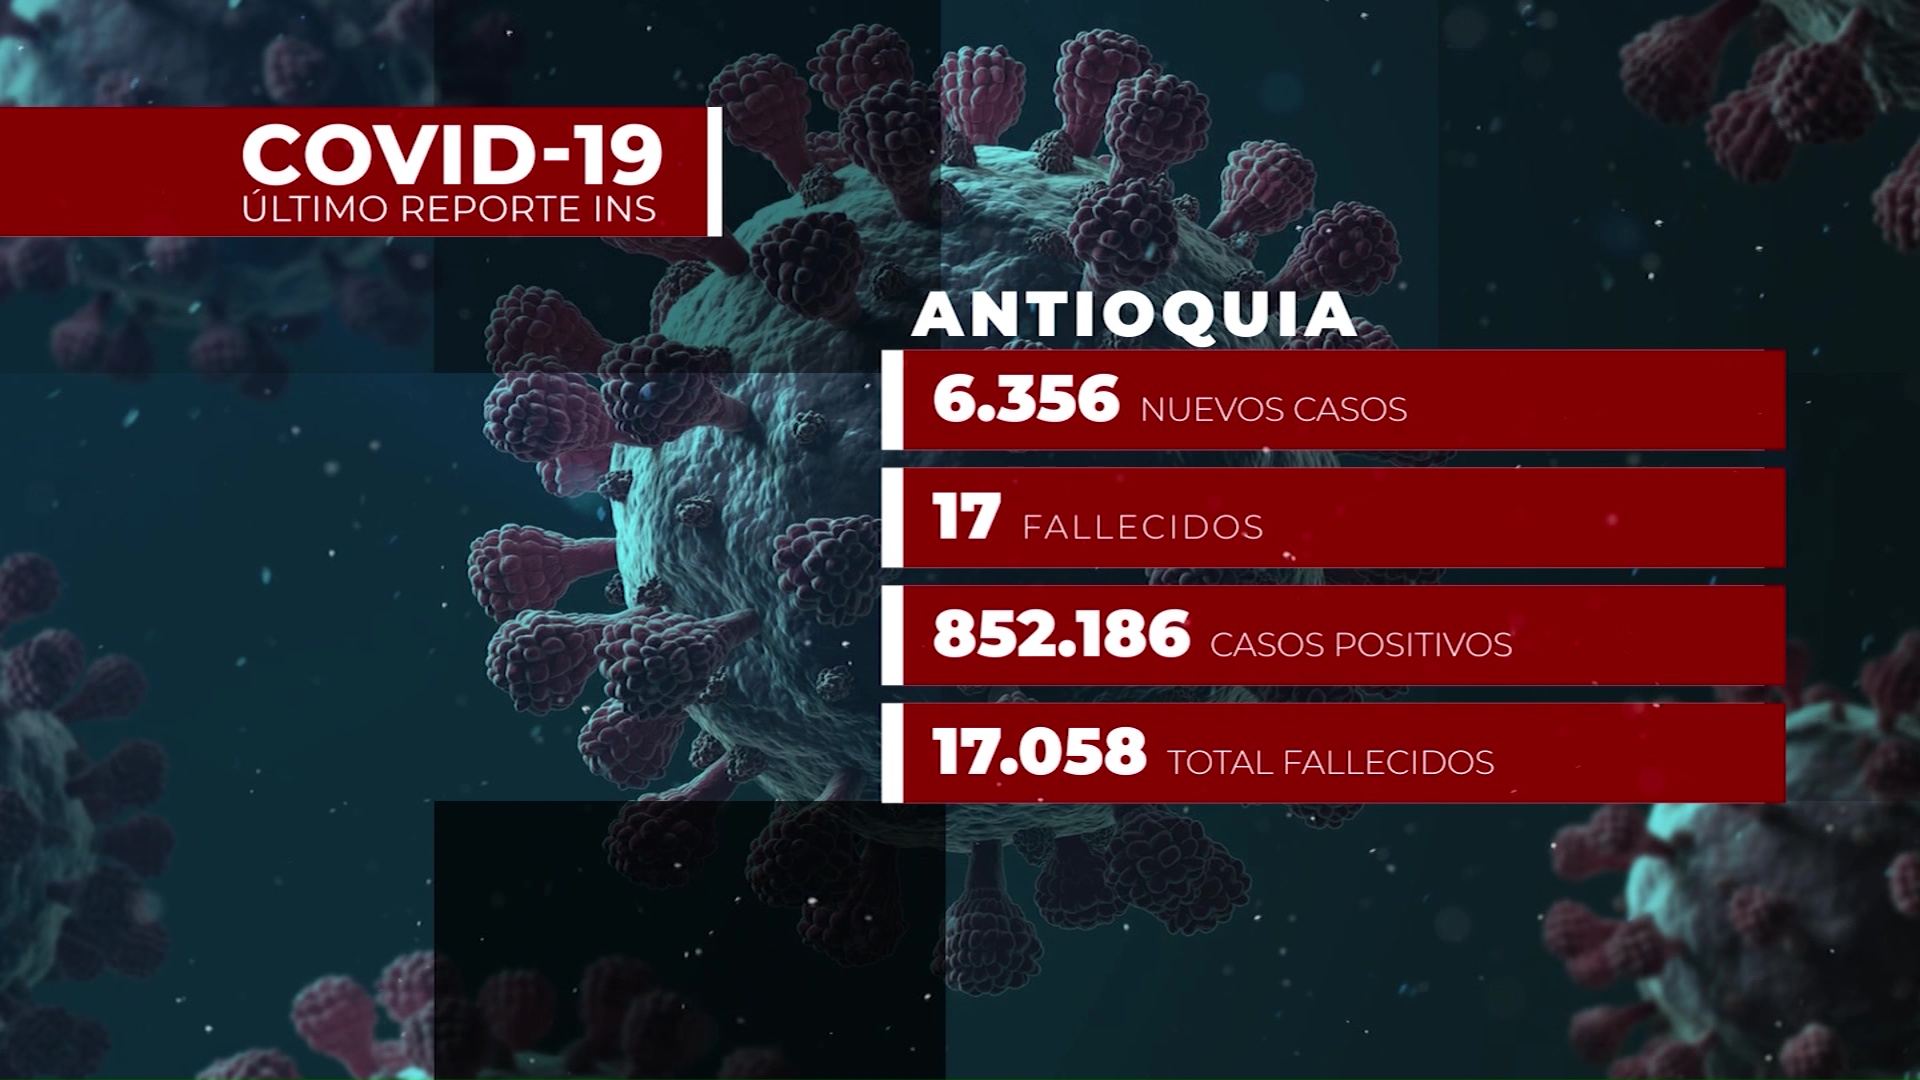 6.356 nuevos casos de Covid en Antioquia